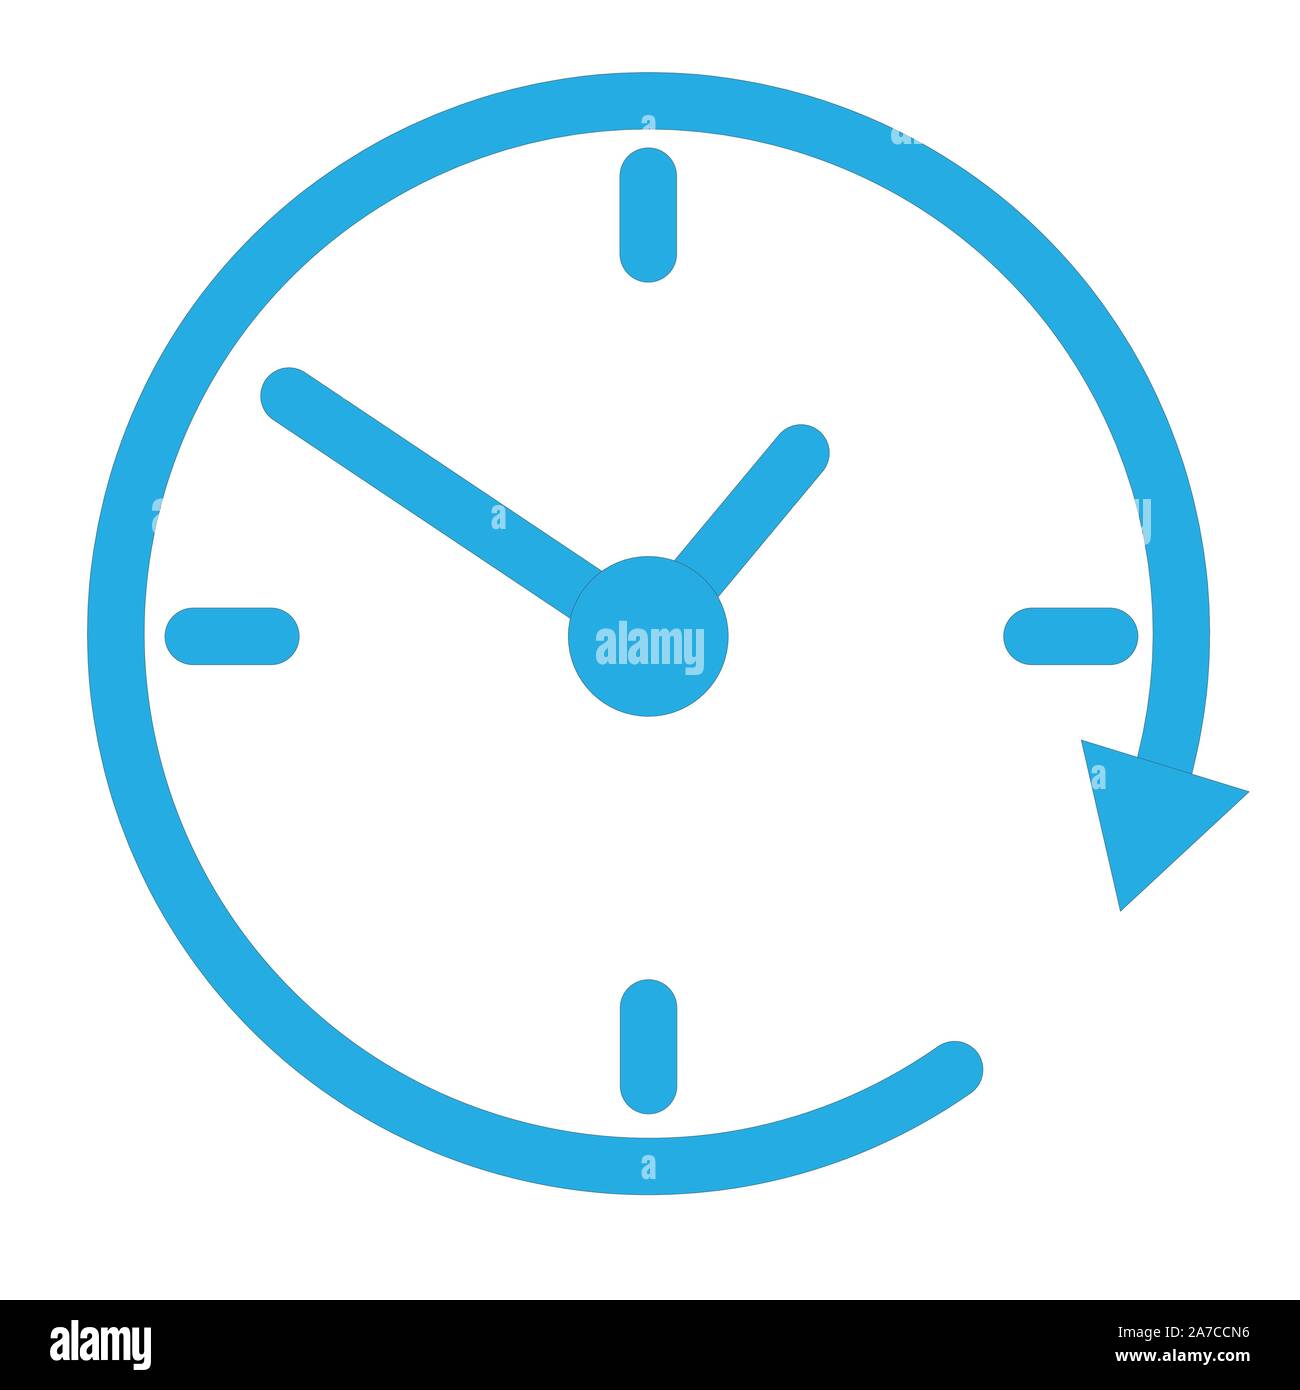 Le symbole de l'horloge, l'icône horloge pour votre web site design, logo,  l'app, l'assurance-chômage. ,Icône horloge dans un style plat isolé sur  fond blanc. Télévision. style cloc bleu Image Vectorielle Stock -